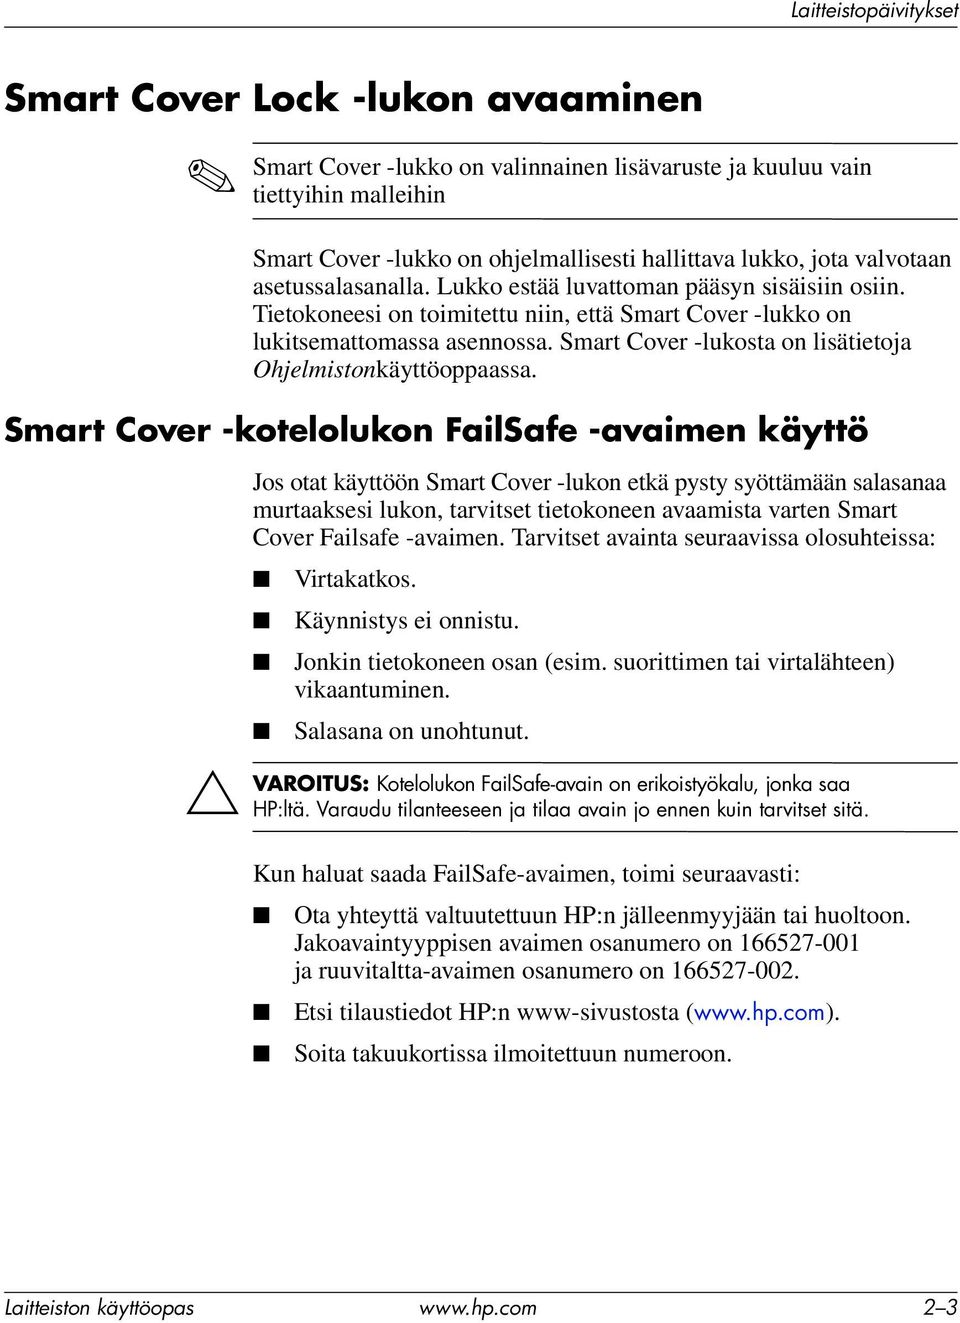 Smart Cover -lukosta on lisätietoja Ohjelmistonkäyttöoppaassa.